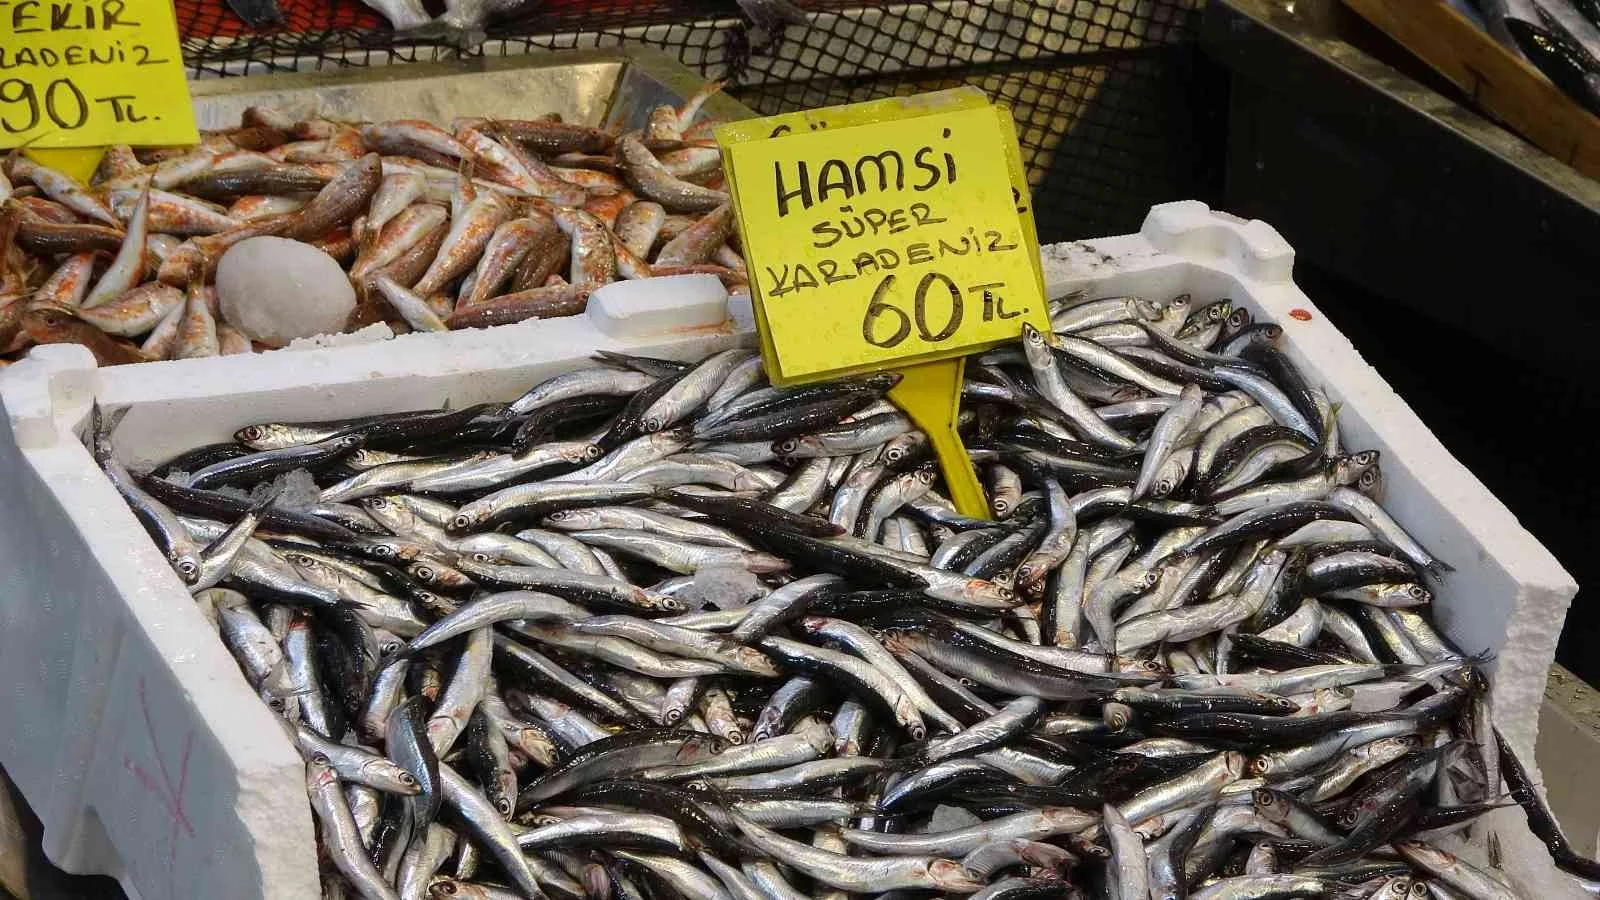 Balık fiyatları geriledi, hamsinin fiyatı 110 TLden 60 TLye düştü